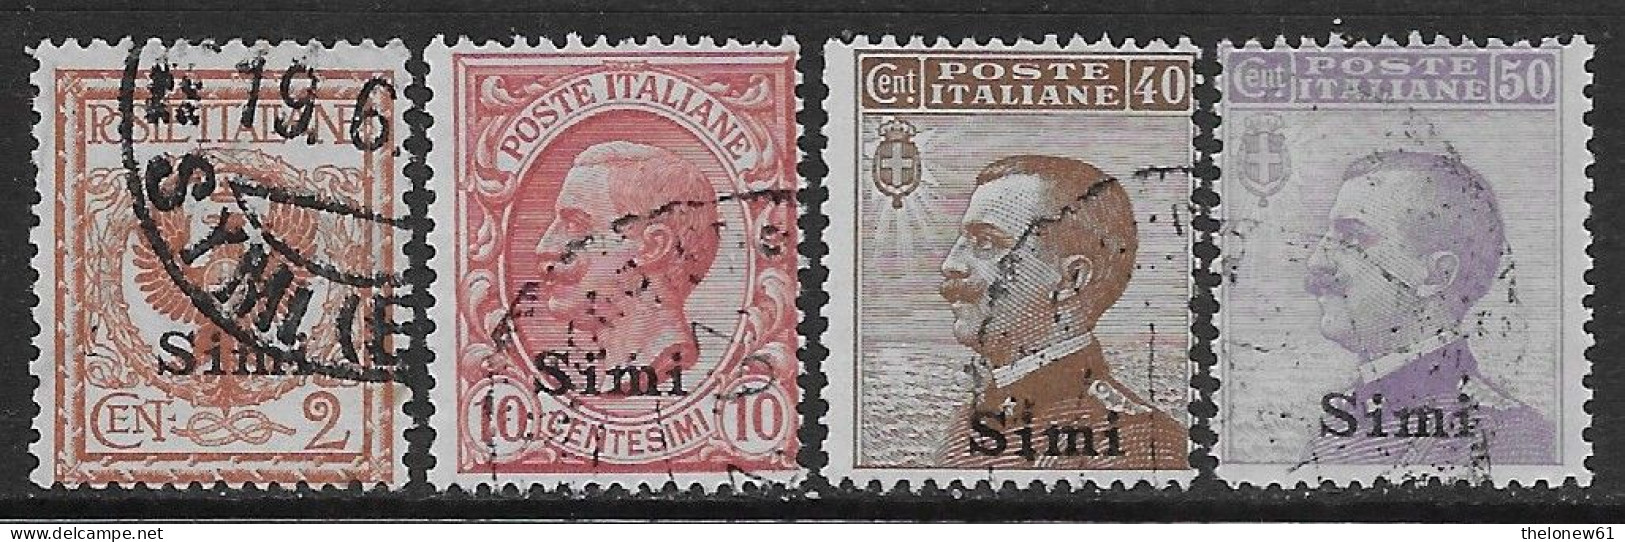 Italia Italy 1912 Colonie Egeo Simi Effigie 4val Sa N.1,3,6-7 US - Egée (Simi)